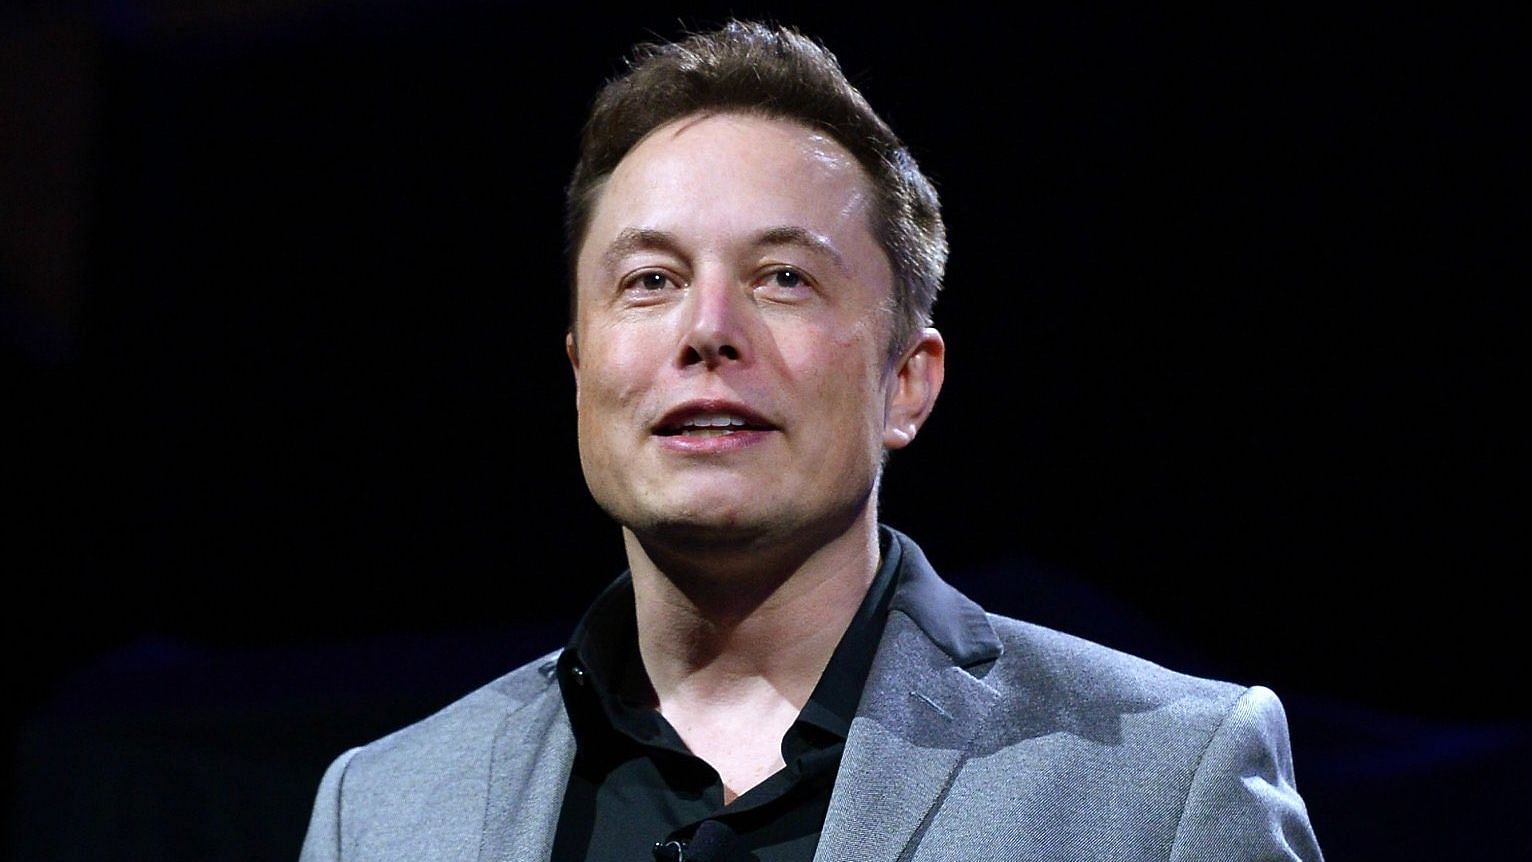 <div class="paragraphs"><p>Elon Musk, the Chief Executive Officer of Tesla Inc.&nbsp;</p></div>